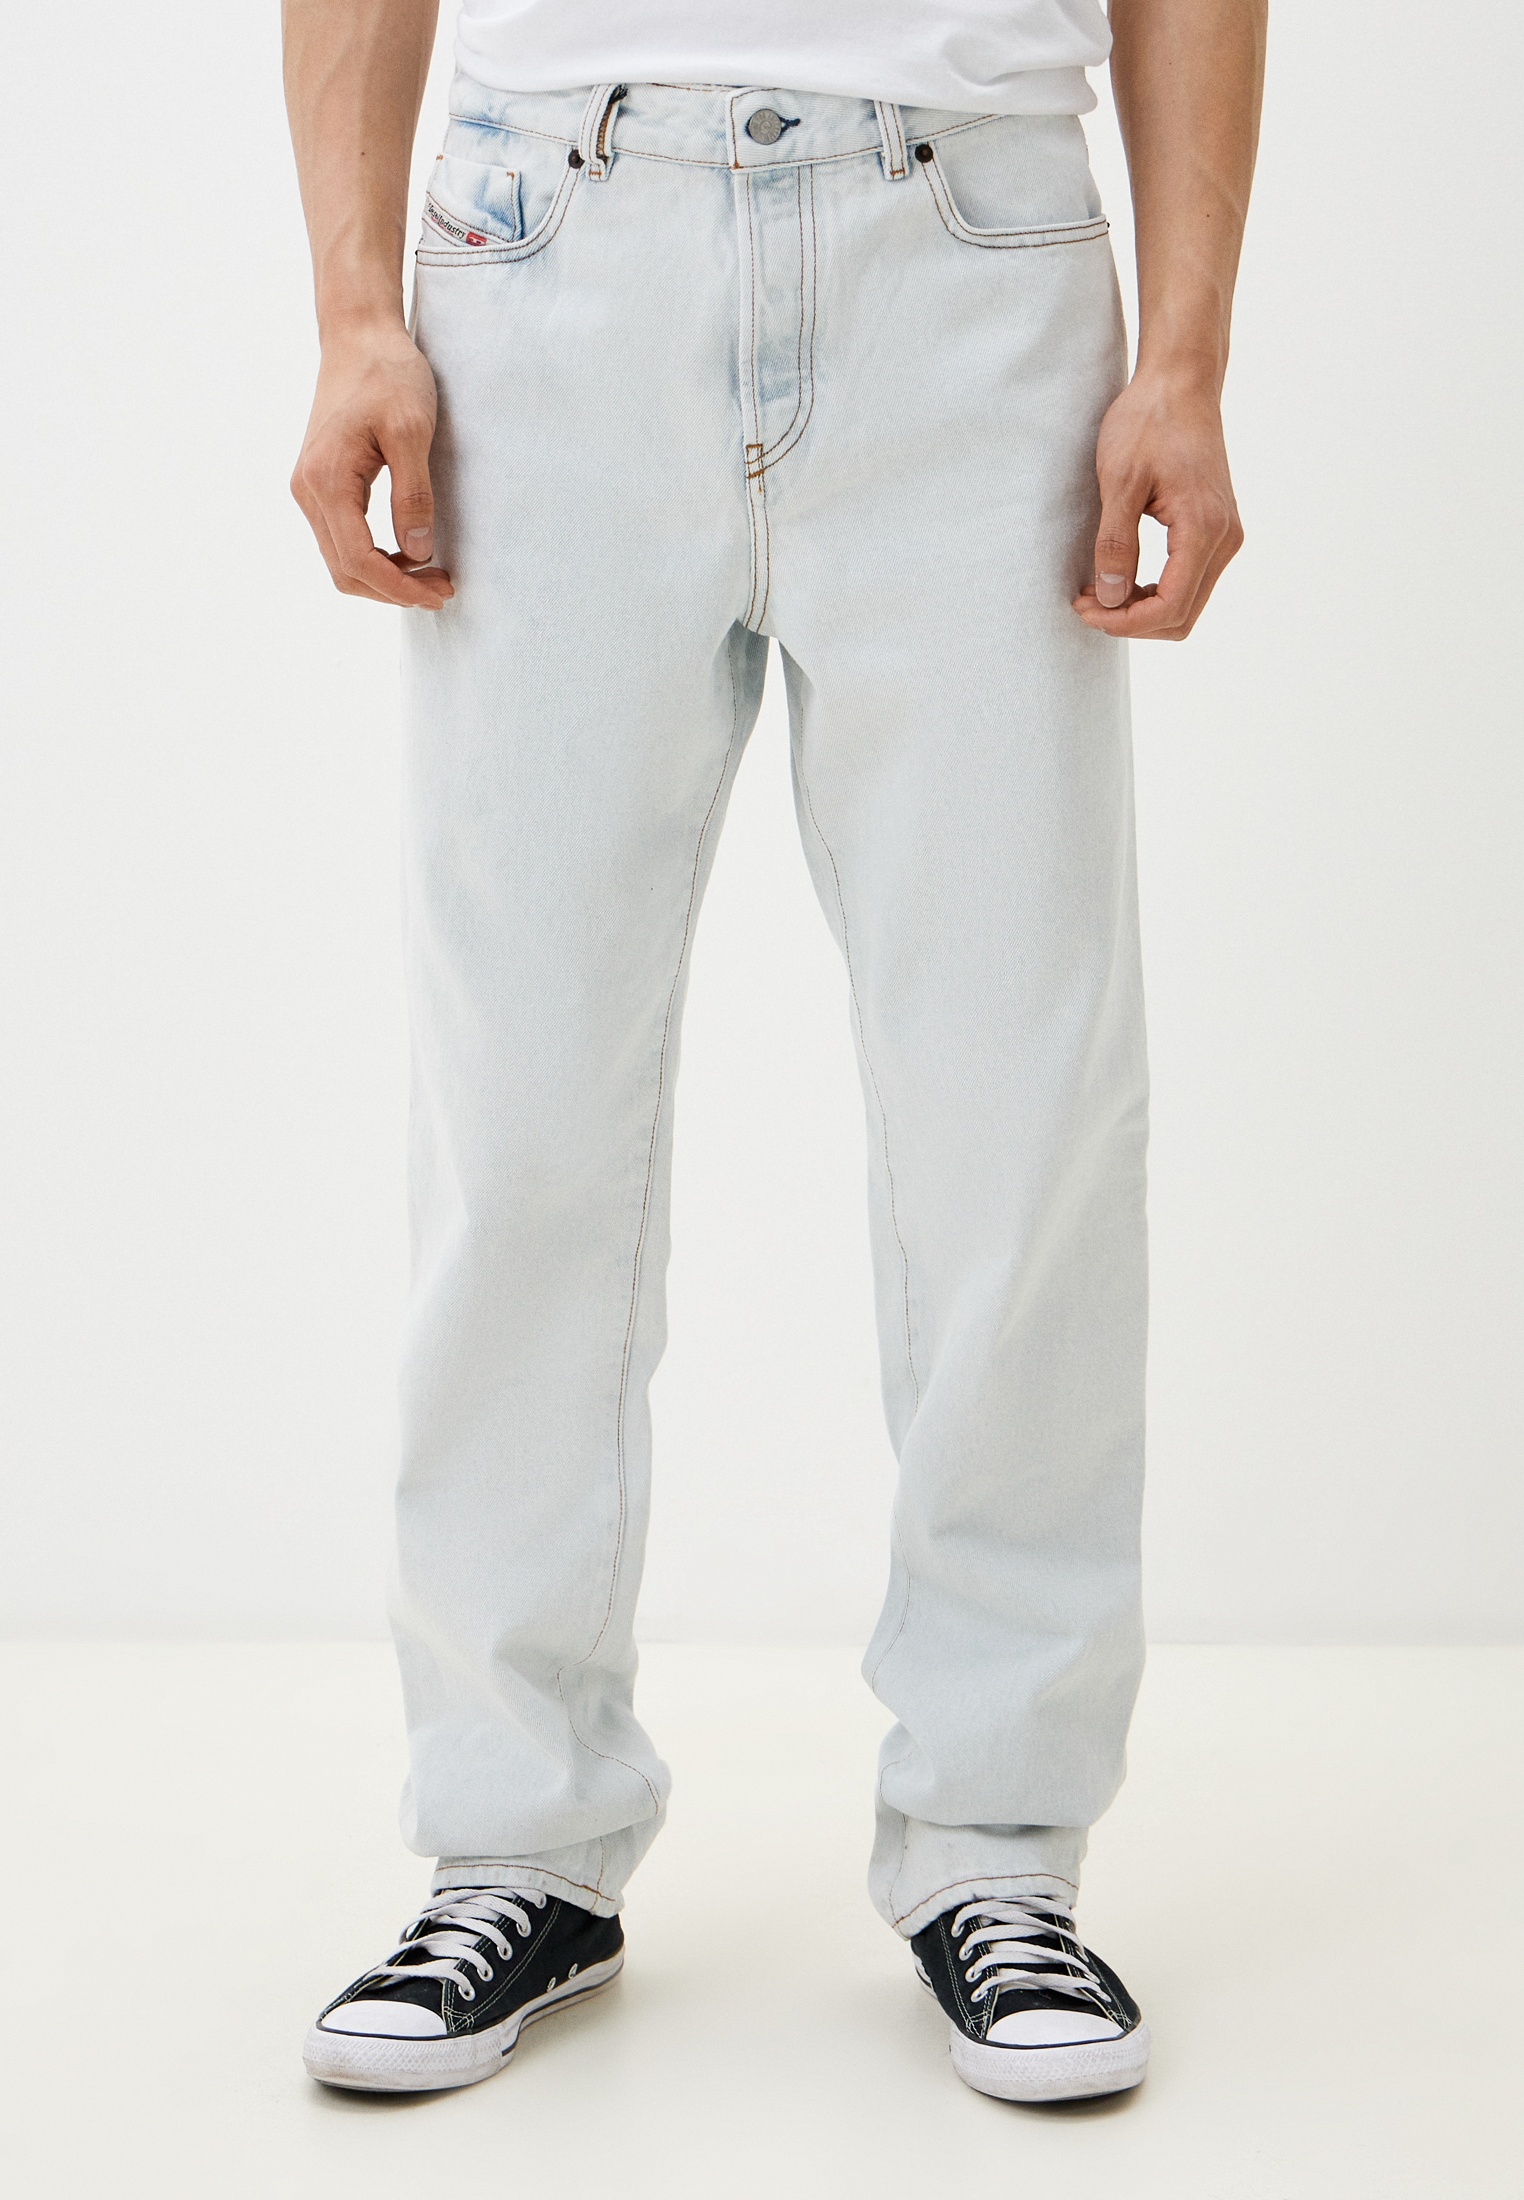 Мужские прямые джинсы Diesel (Дизель) A043740079Z: изображение 1